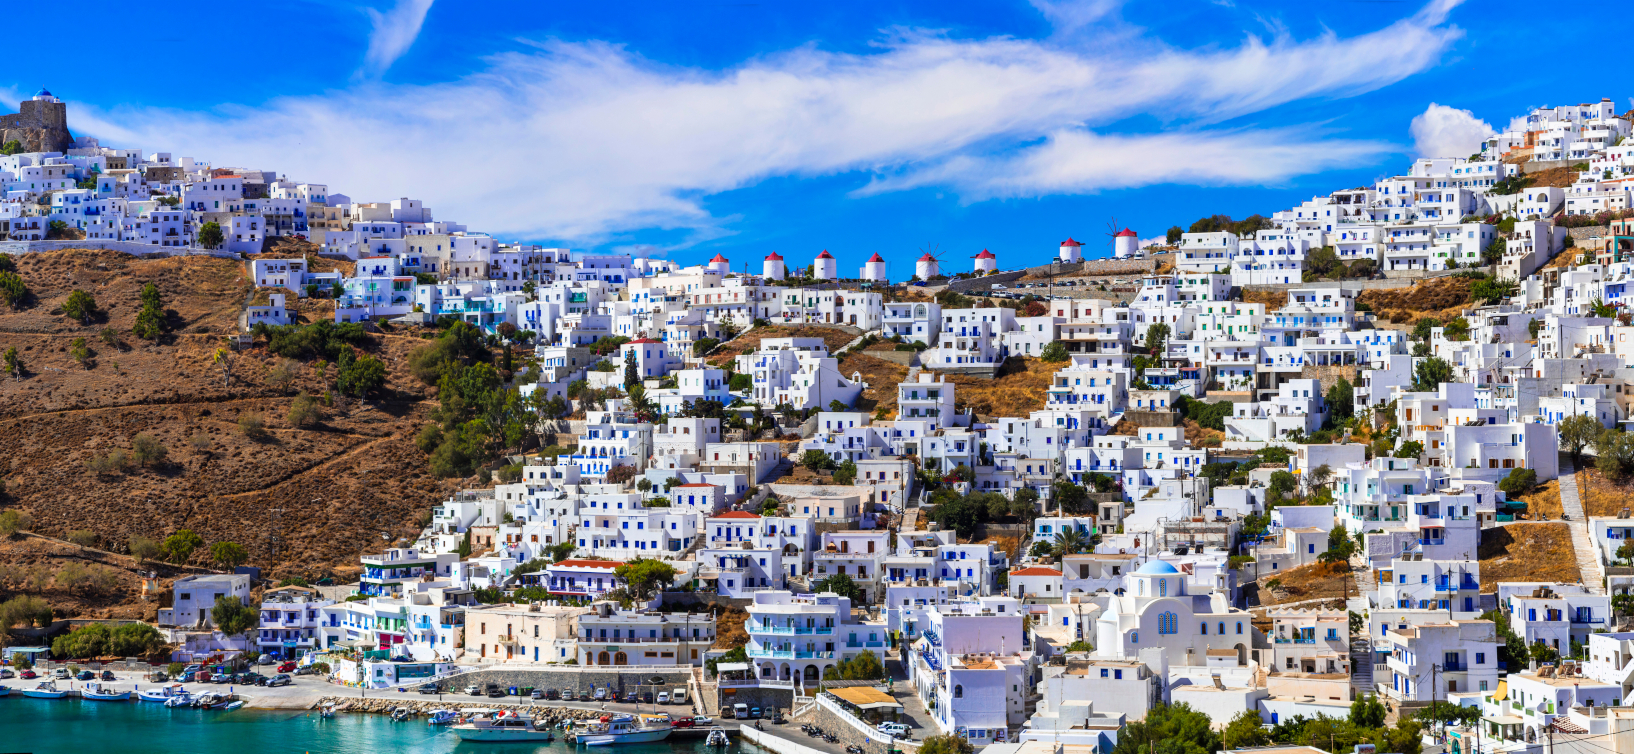 «Εκεί θα κάνεις αληθινές διακοπές και θα φας το καλύτερο κατσικάκι στα Δωδεκάνησα»: Το ελληνικό νησί που δεν παραδίνεται στον υπερτουρισμό